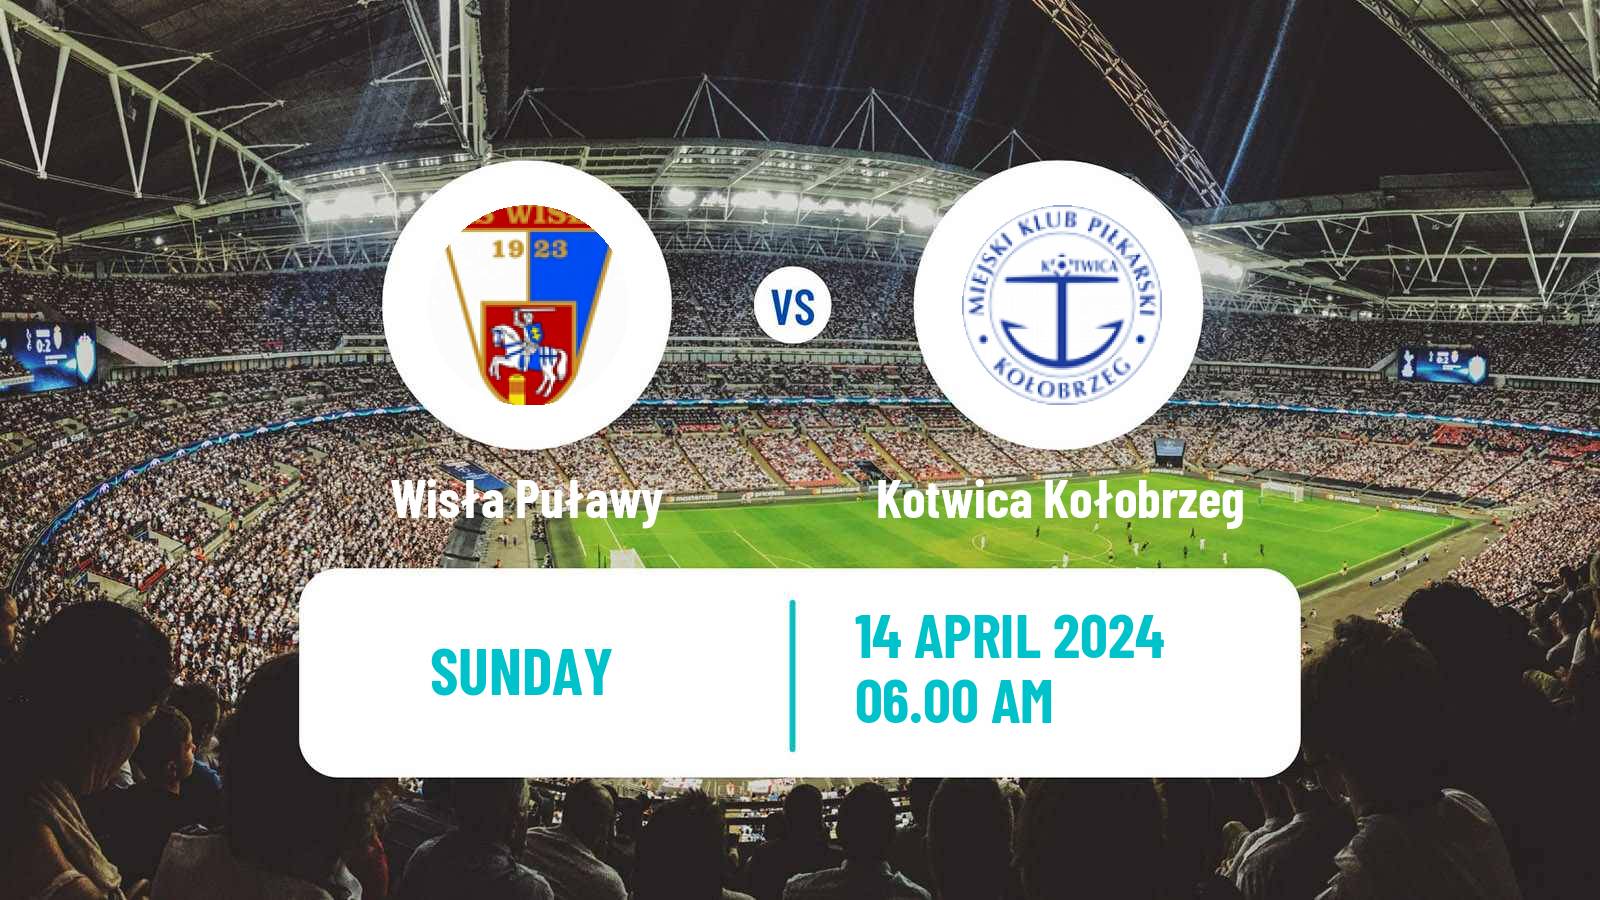 Soccer Polish Division 2 Wisła Puławy - Kotwica Kołobrzeg